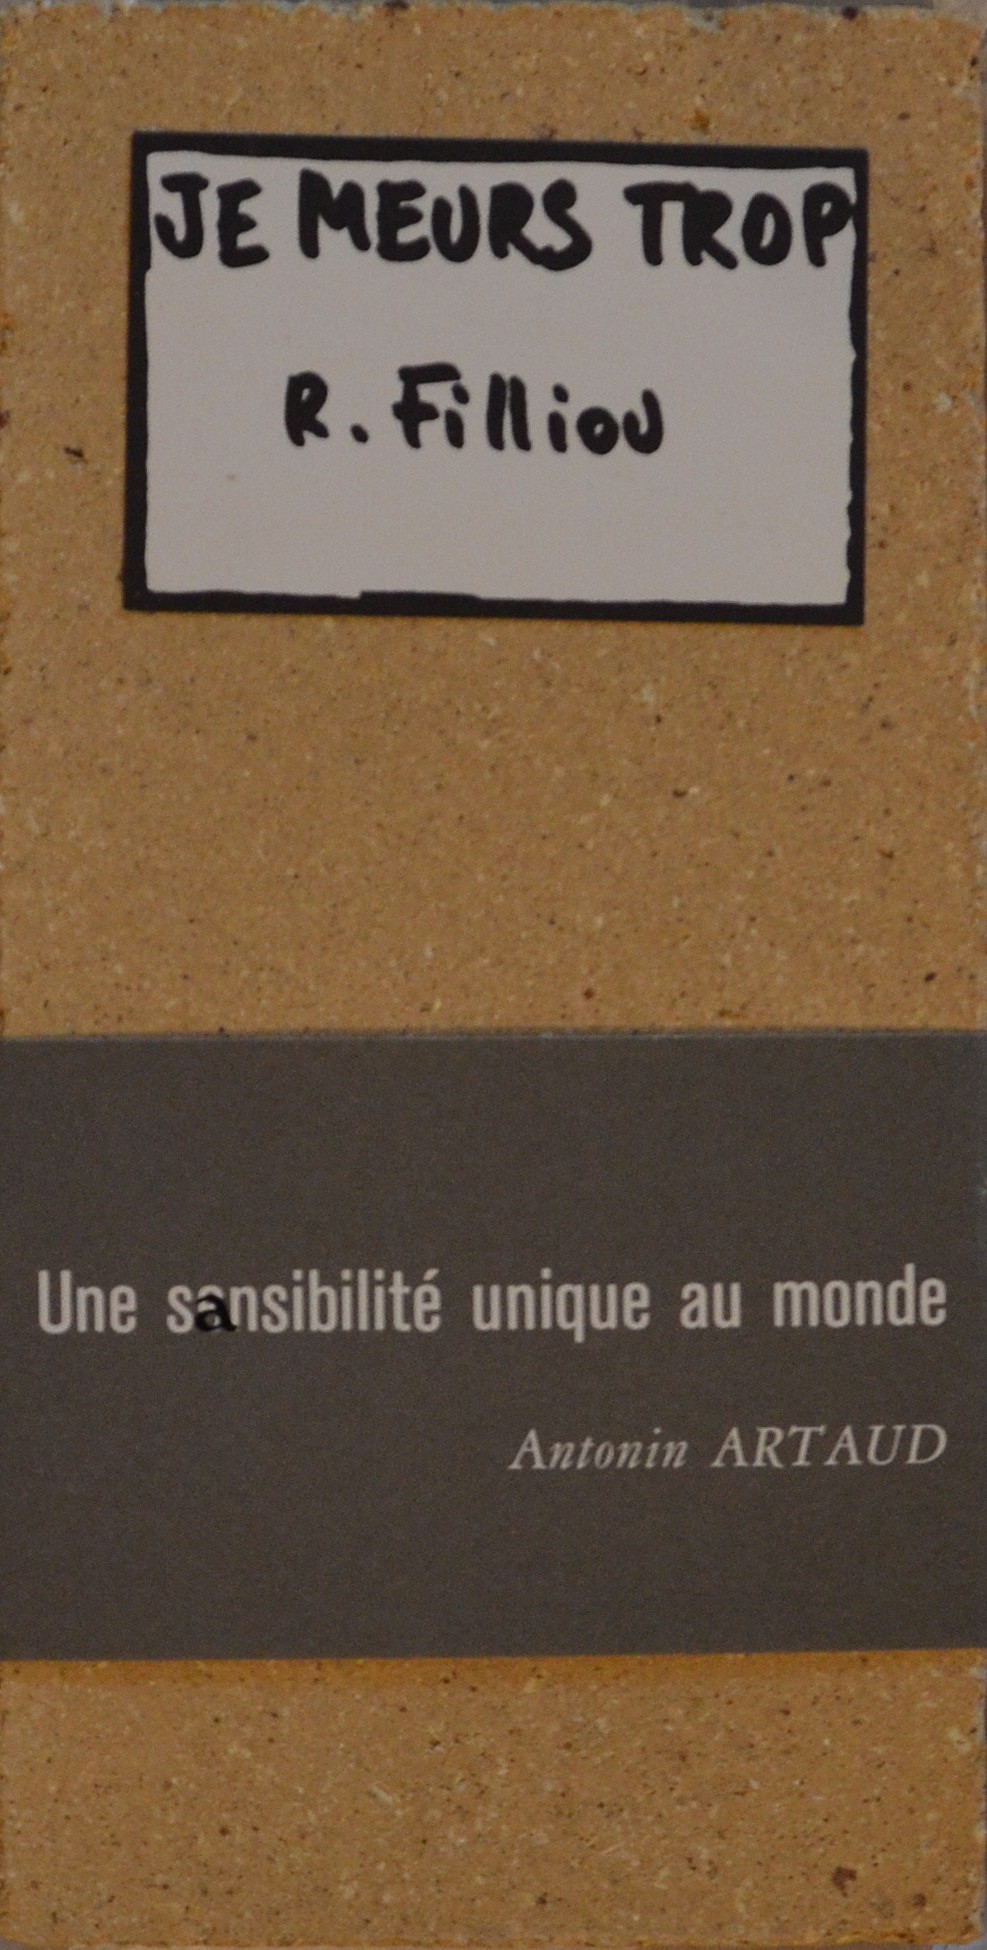 An Unreadable Quadrat-Print Libro illeggibile Bianco e Rosso (Publisher:  Steendrukkeri de jong, Hilversum), 1964 by Bruno Munari